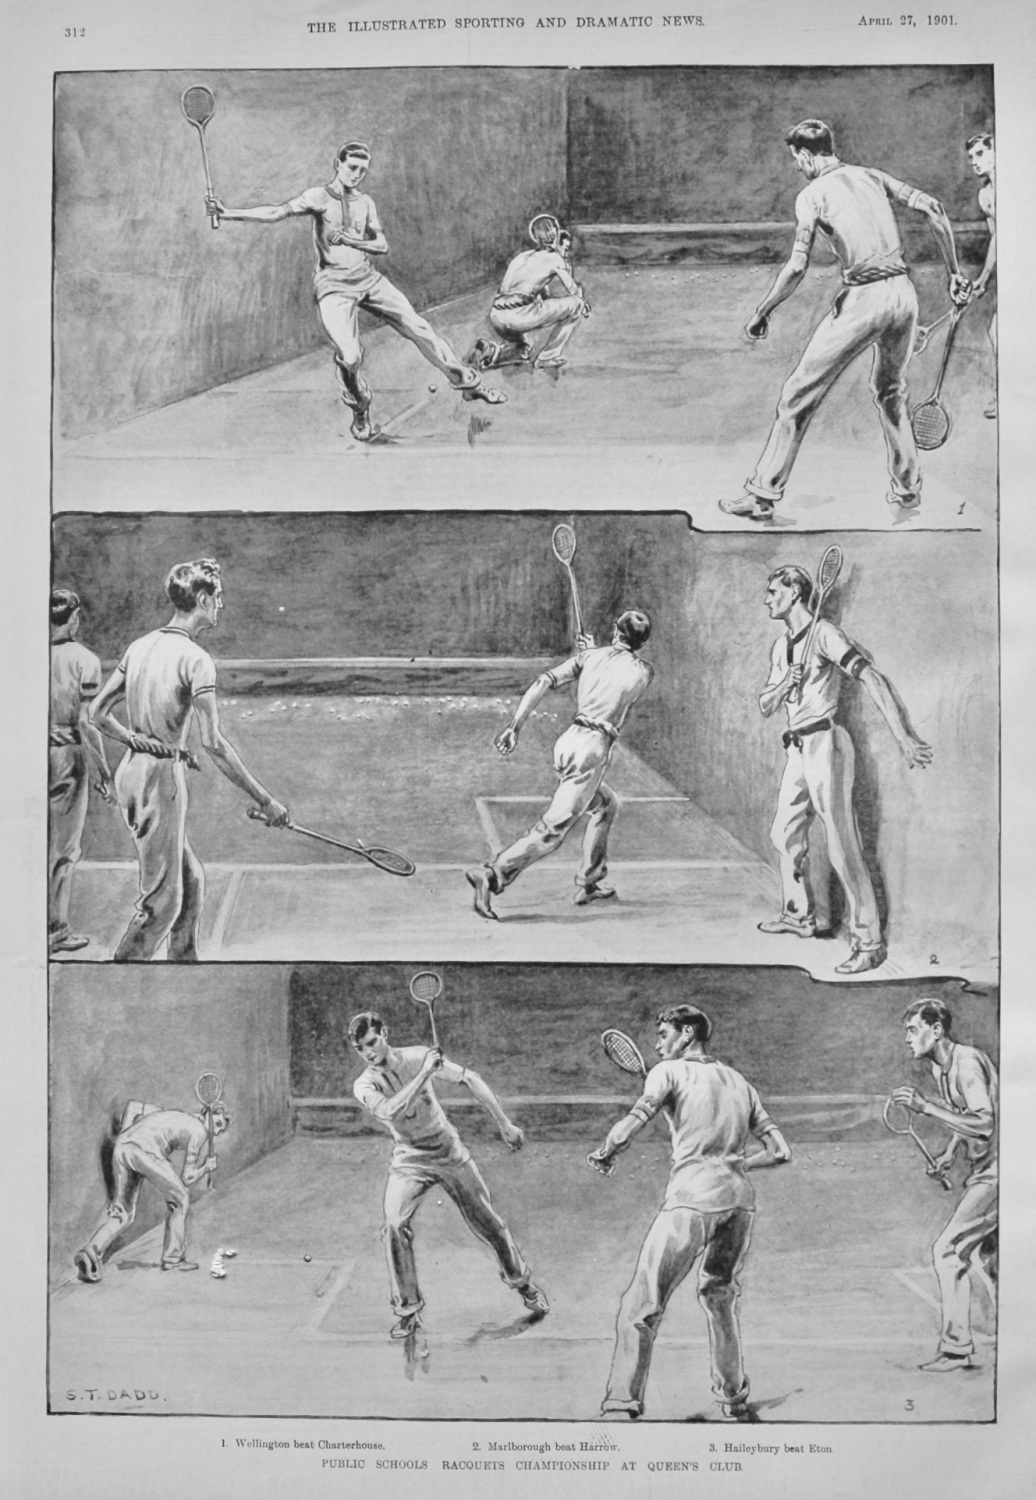 Public Schools Racquets Championship at Queen's Club. 1901.